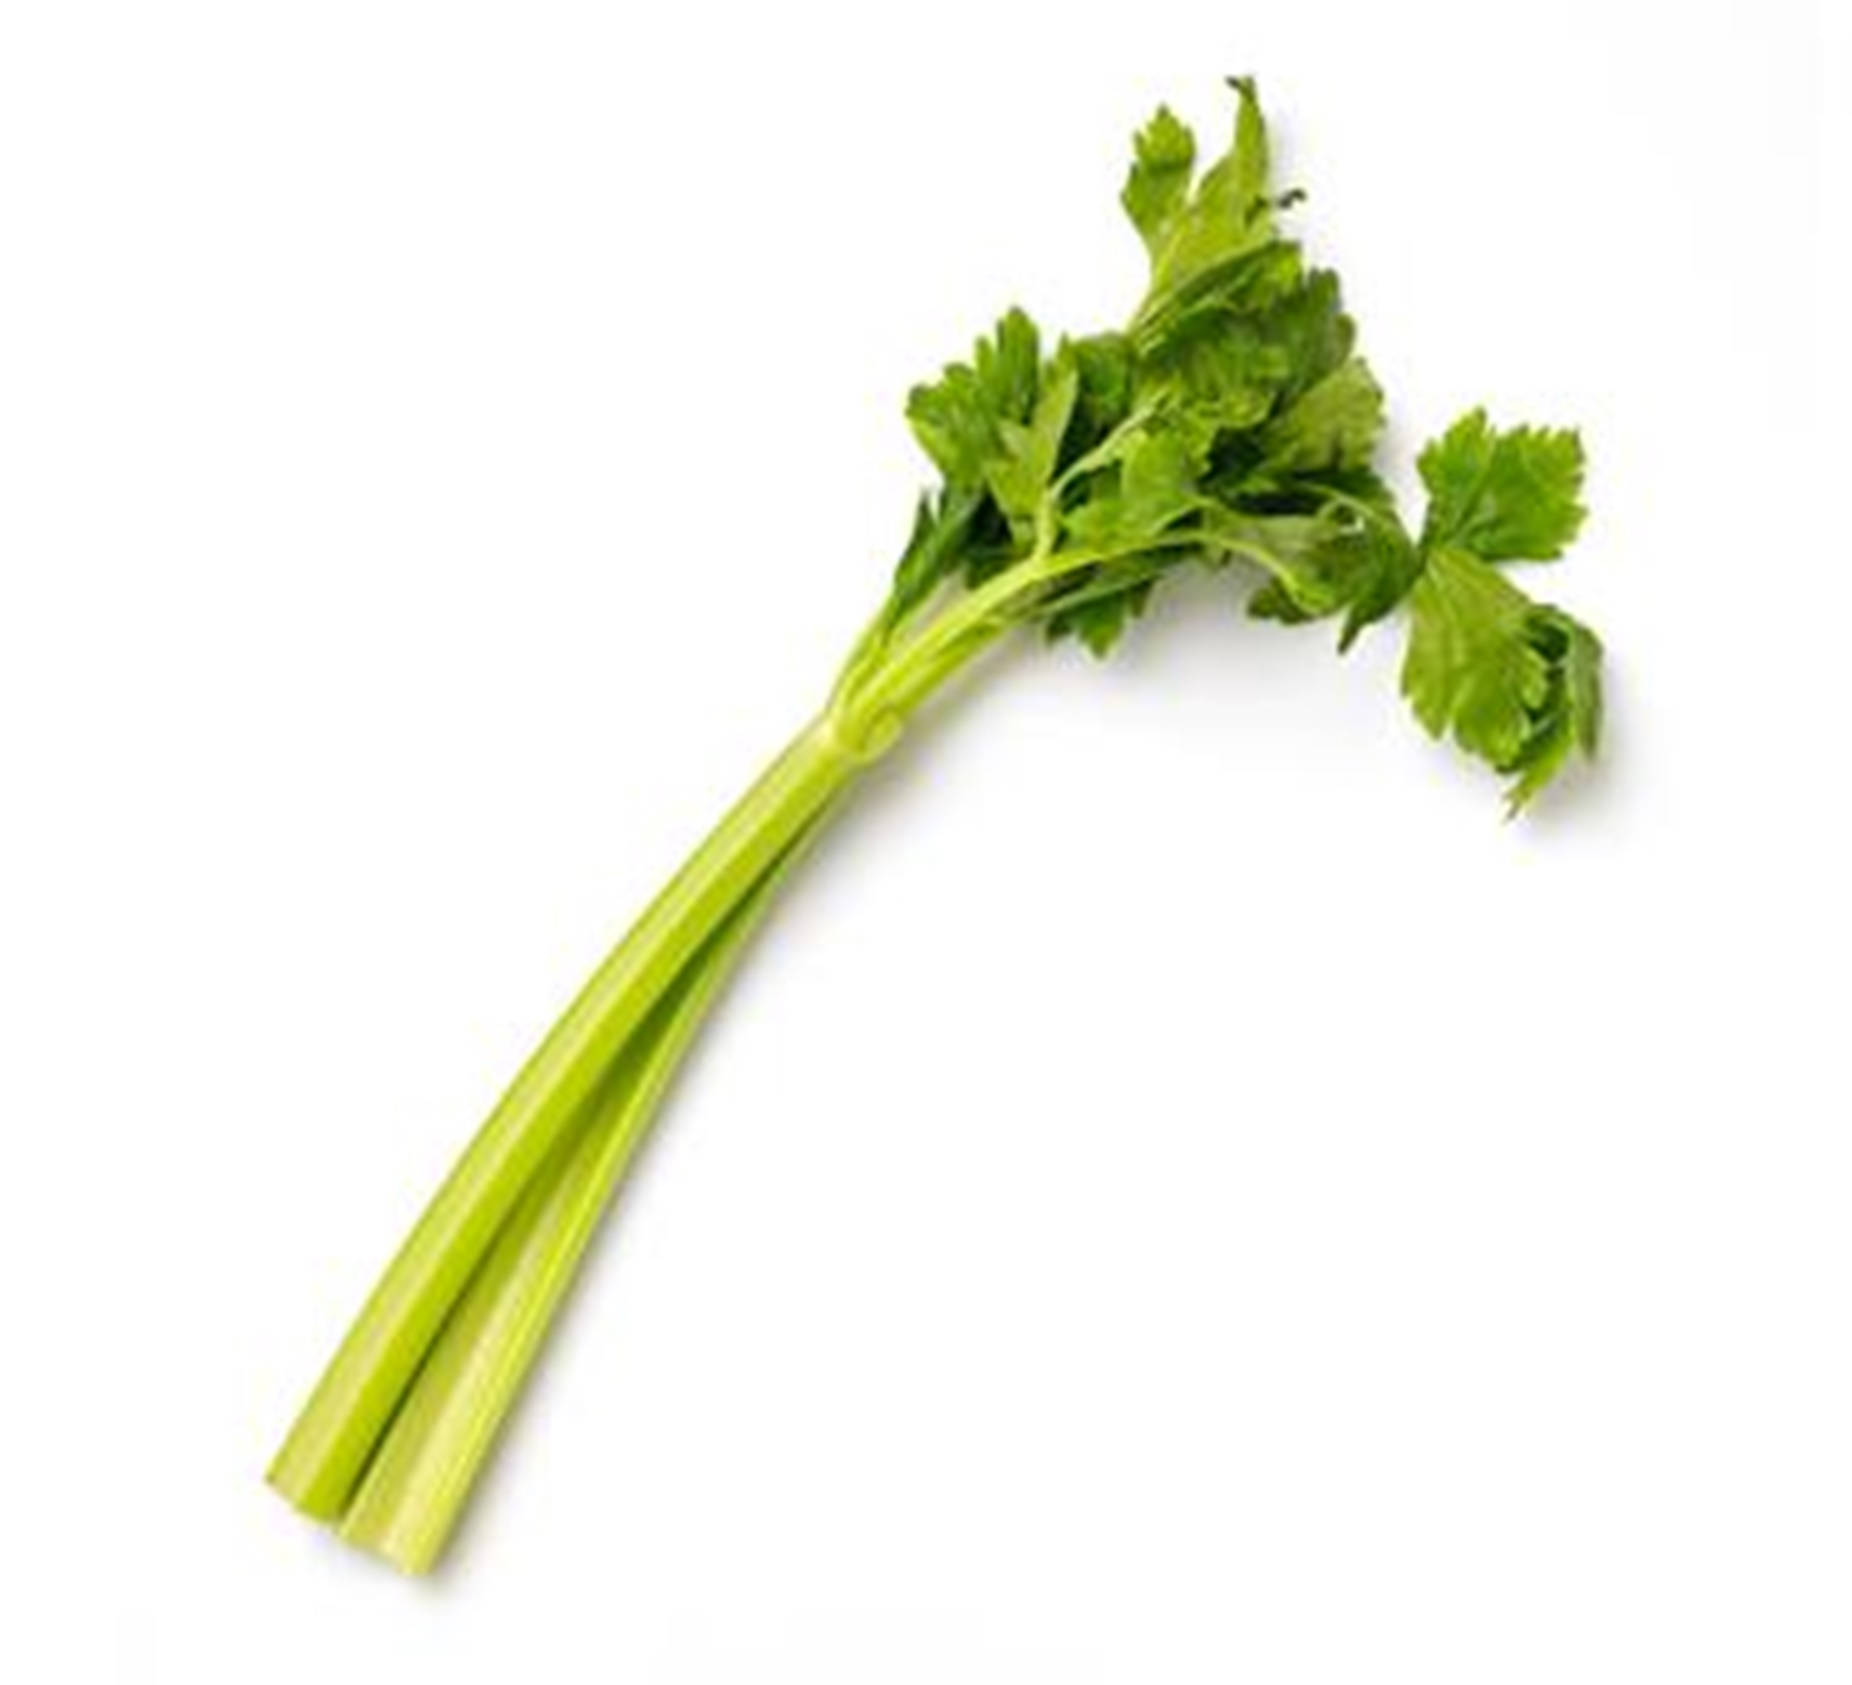 Artificial Leafy Celery Stalks Wallpaper